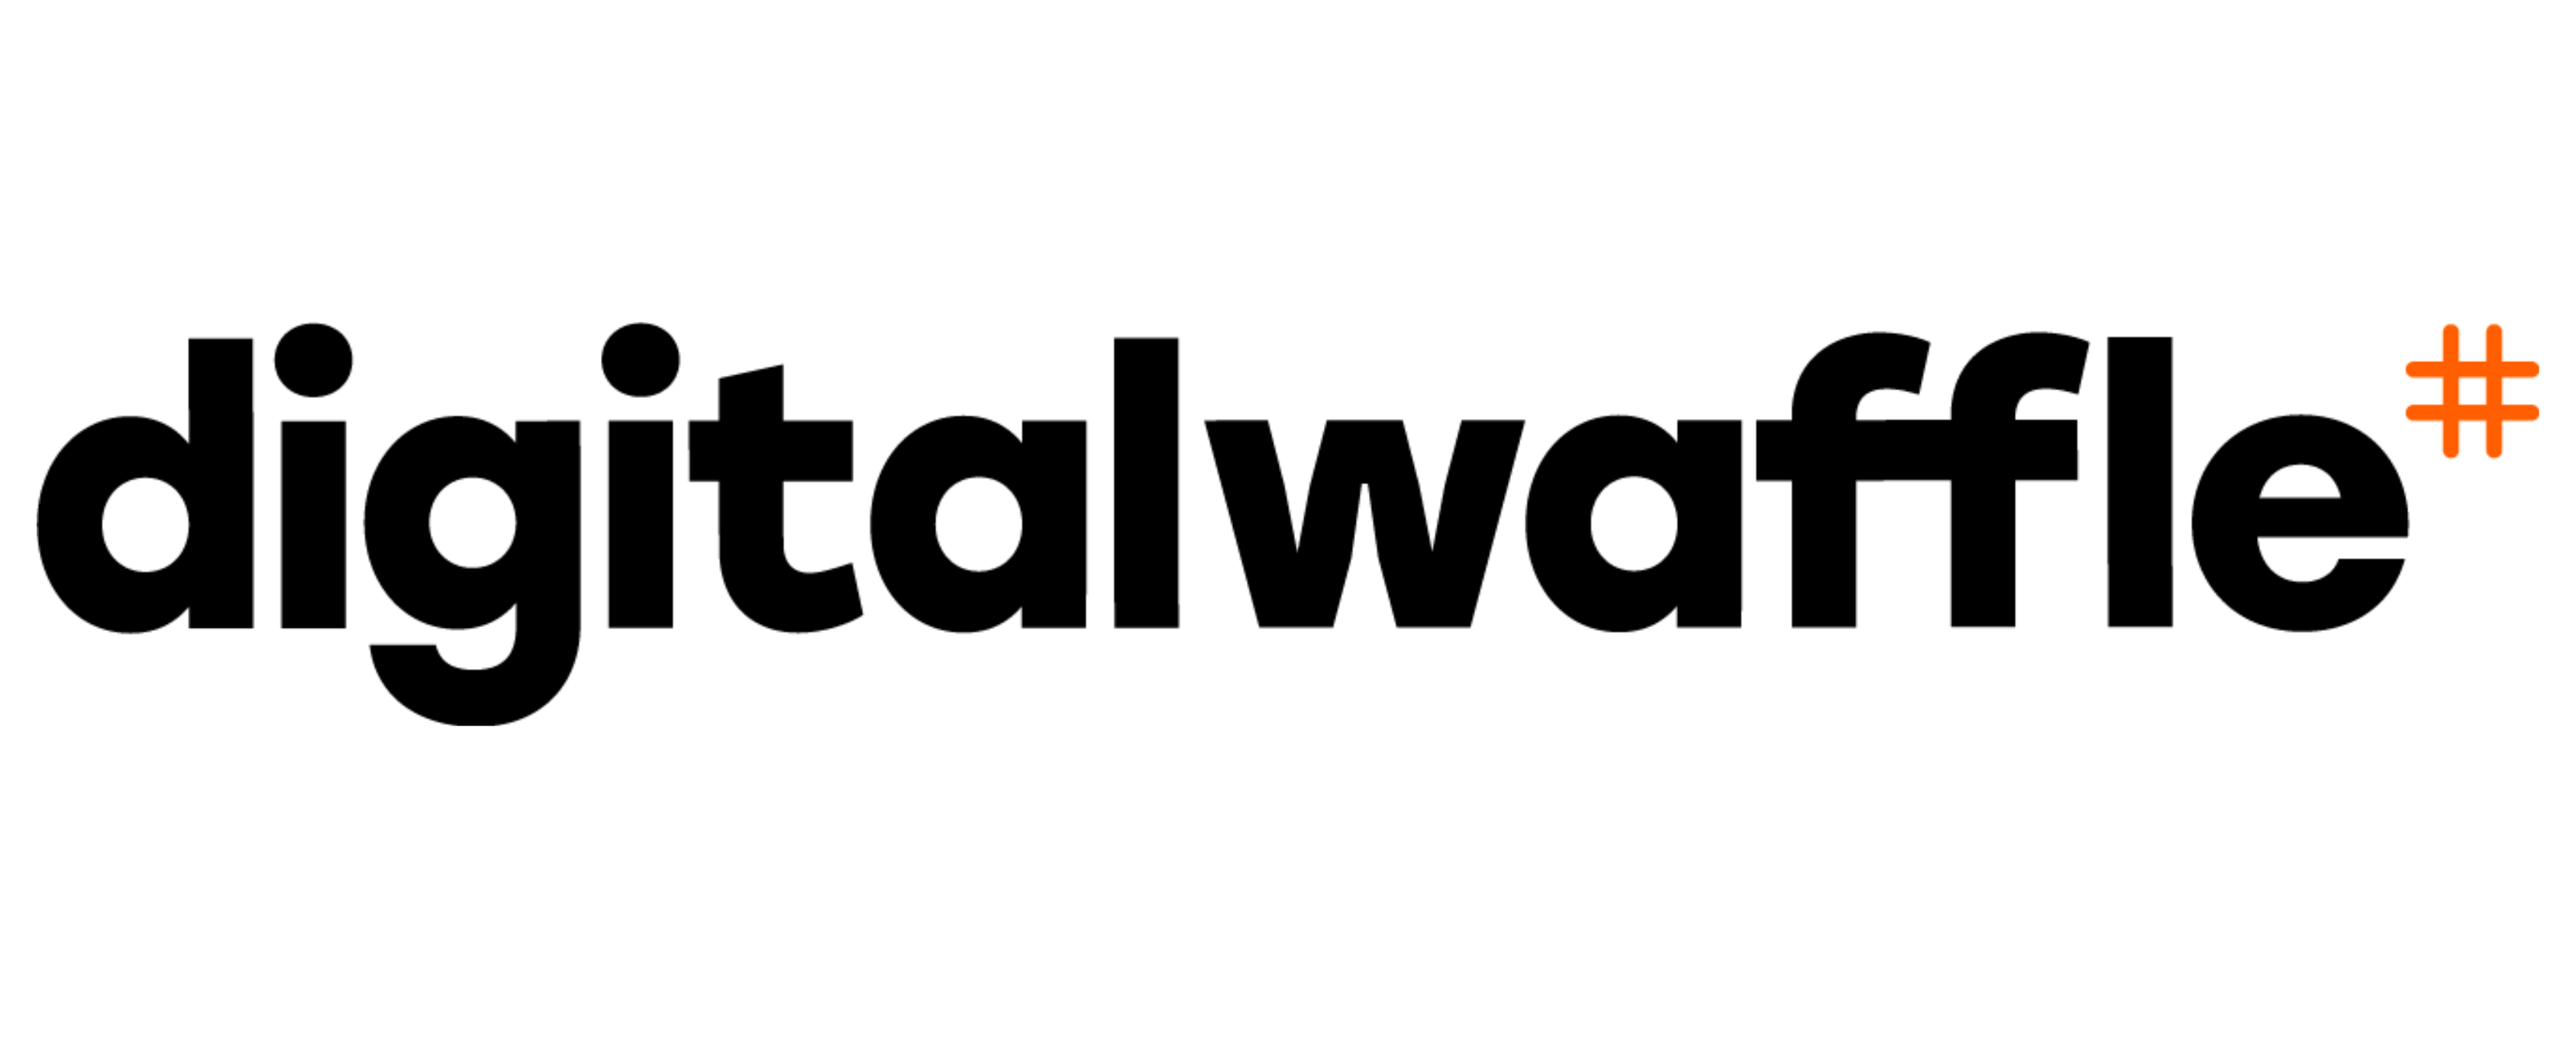 Digital Waffle Logo - Black